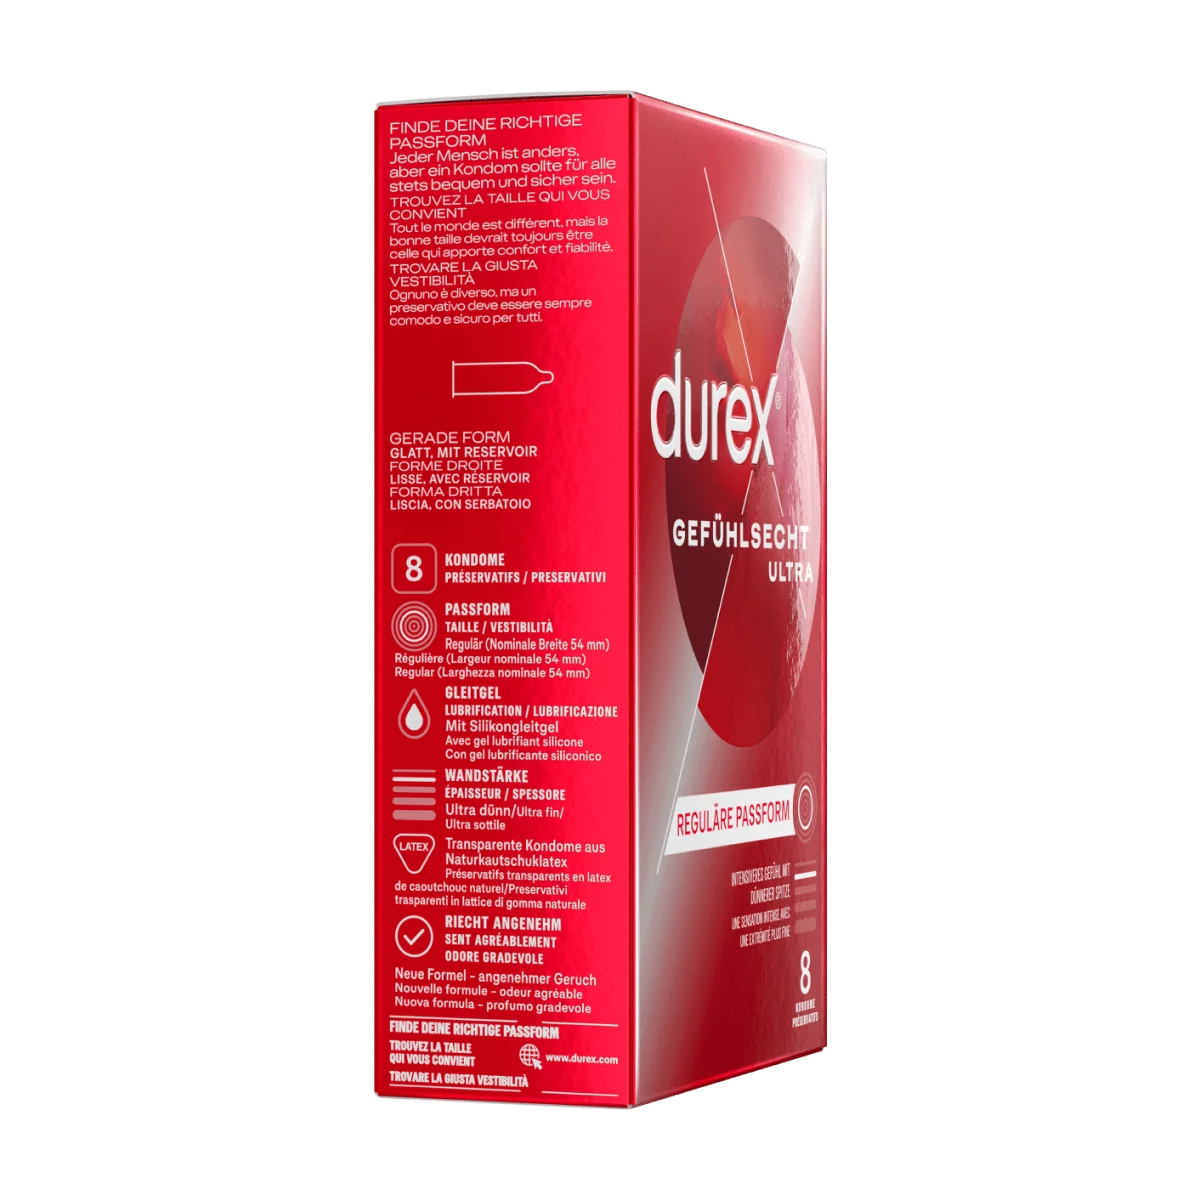 Durex Kondome Gefühlsecht Ultra, Breite 54mm, 8 Stk